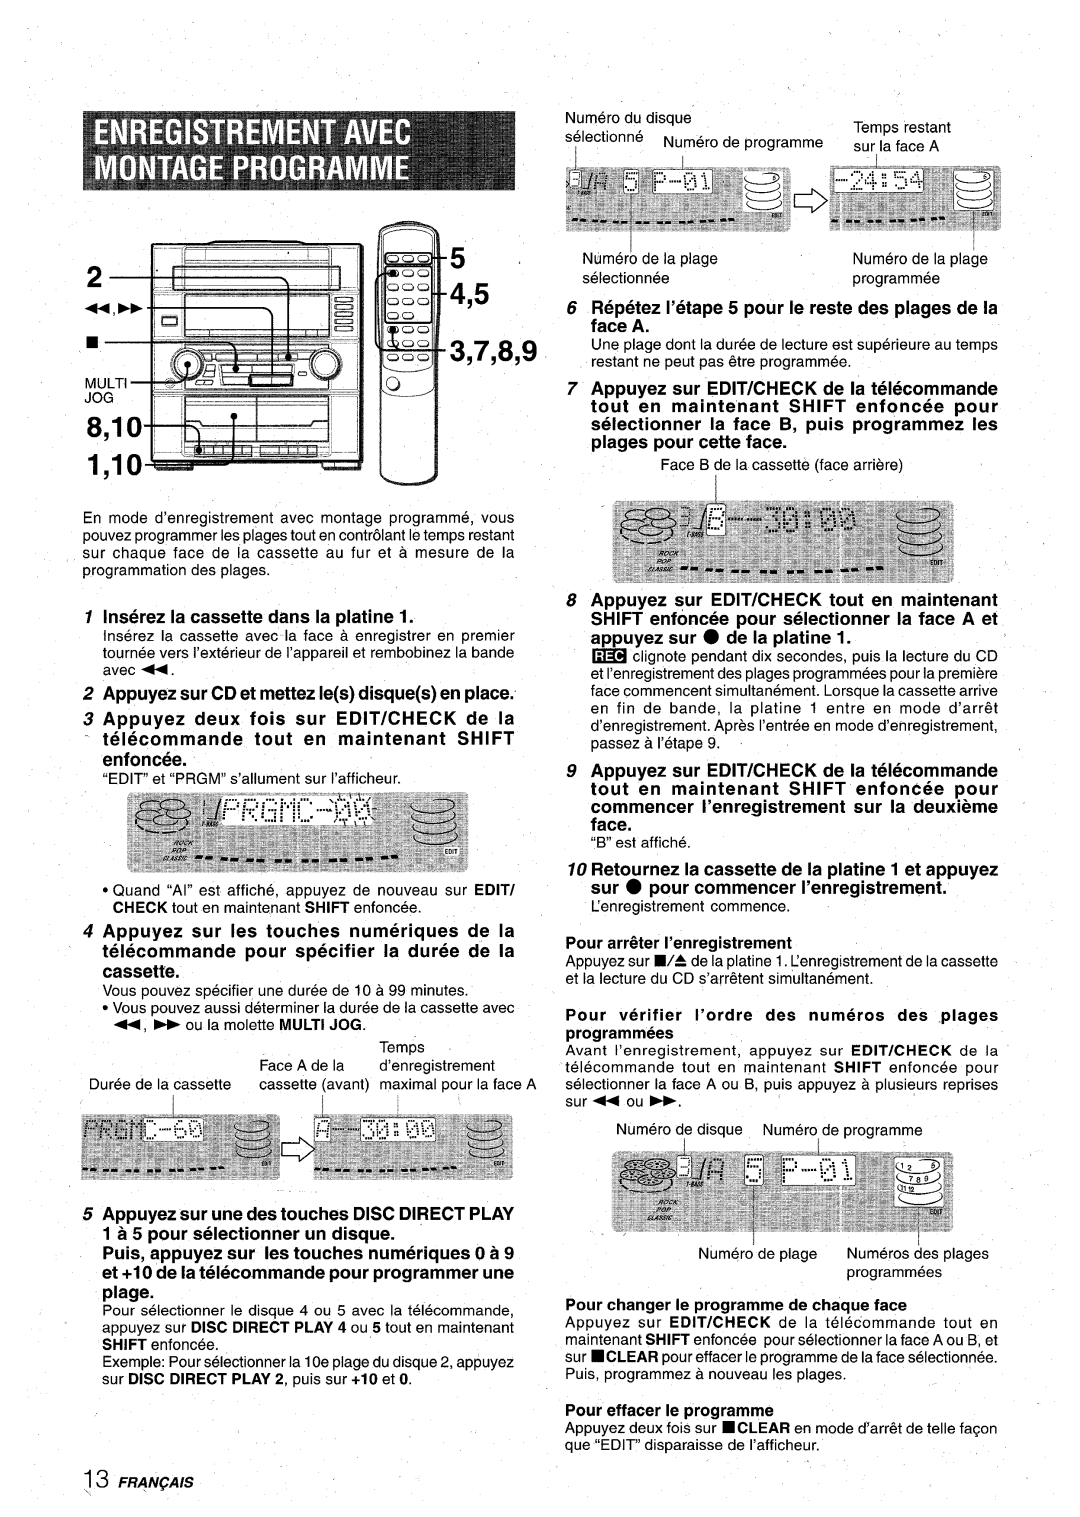 Aiwa XR-M75 manual Inserez la cassette clans la platine, Appuyez sur CD et mettez Ies disques en place, 4,5 3,7,8,9 